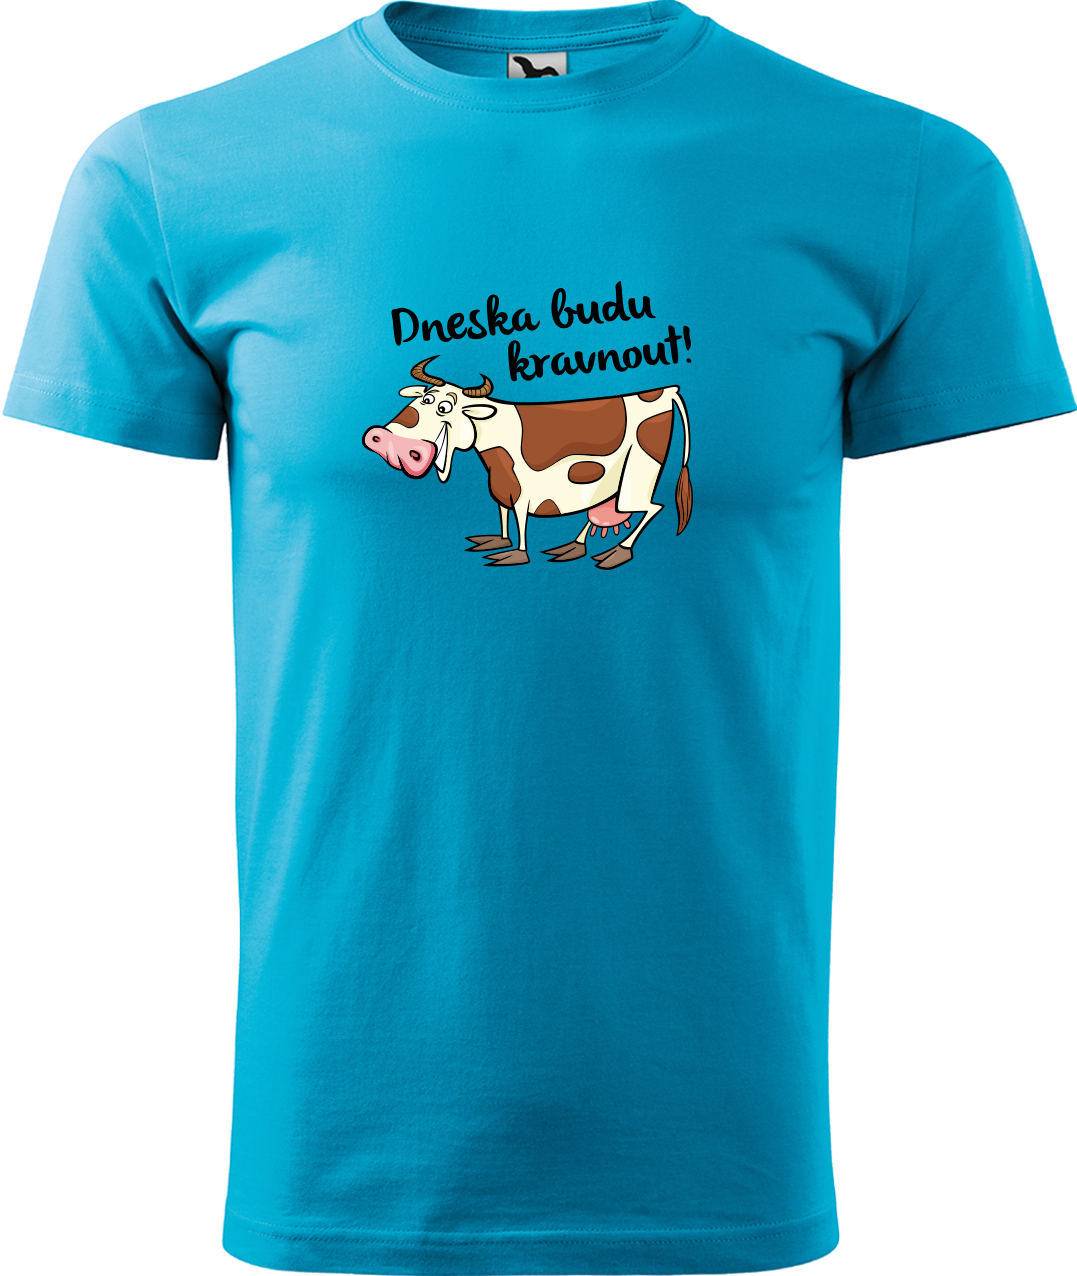 Pánské tričko s krávou - Dneska budu kravnout! Velikost: L, Barva: Tyrkysová (44), Střih: pánský